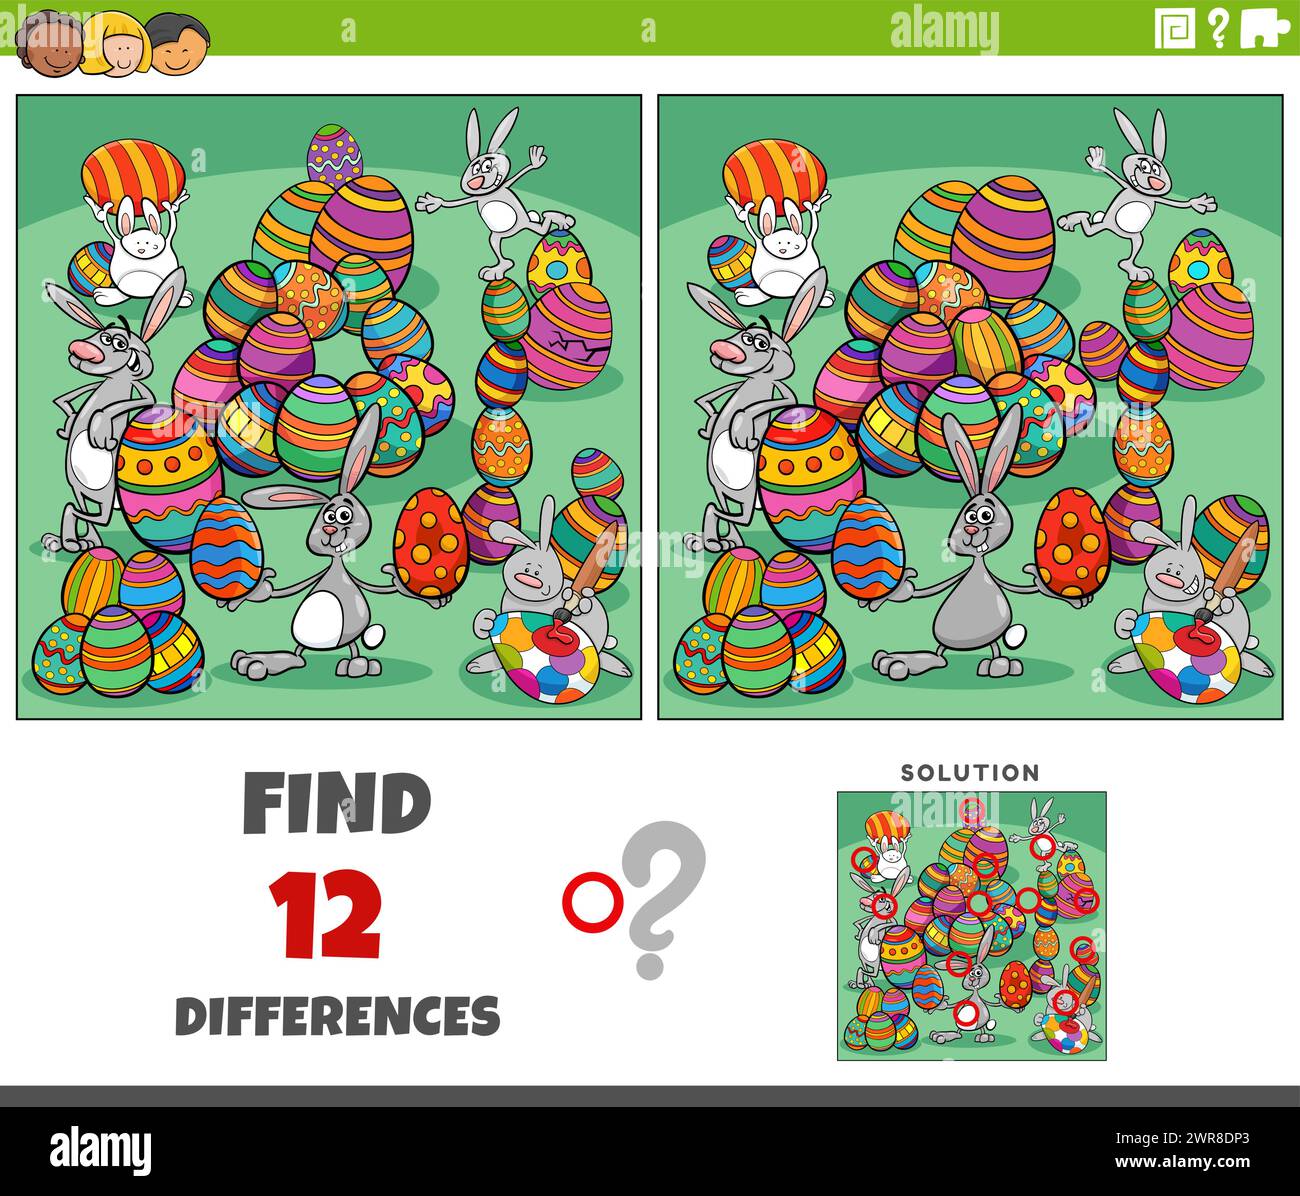 Illustration de dessin animé de trouver les différences entre les images jeu éducatif avec des lapins de Pâques groupe de personnages avec des oeufs colorés Illustration de Vecteur